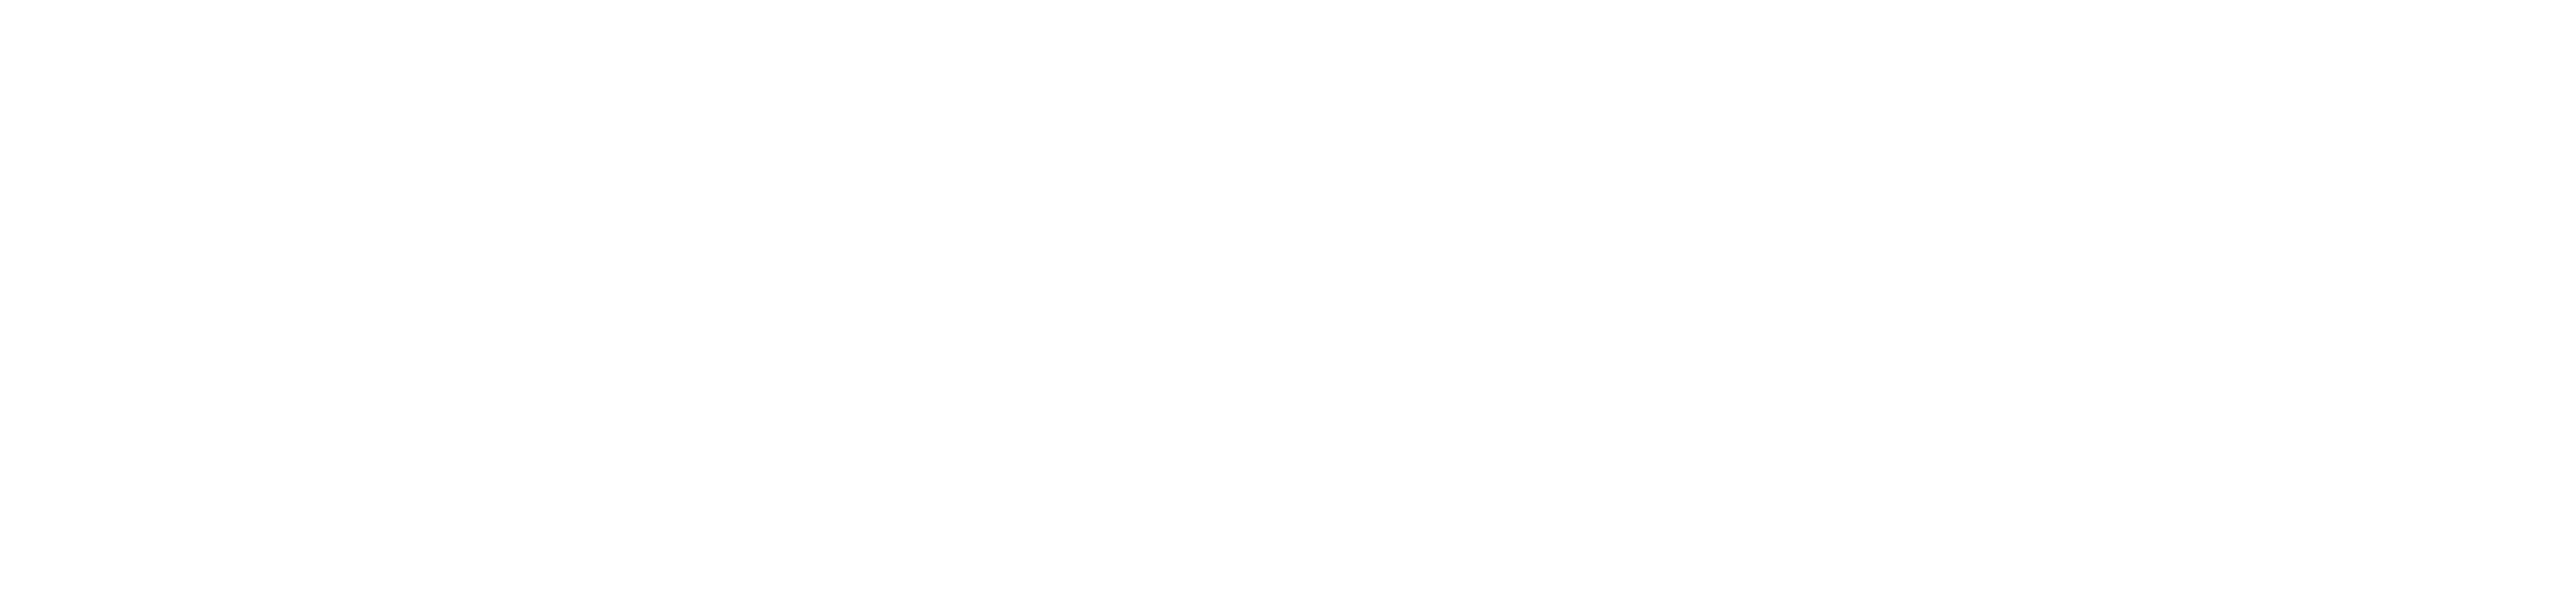 KISS FRESH